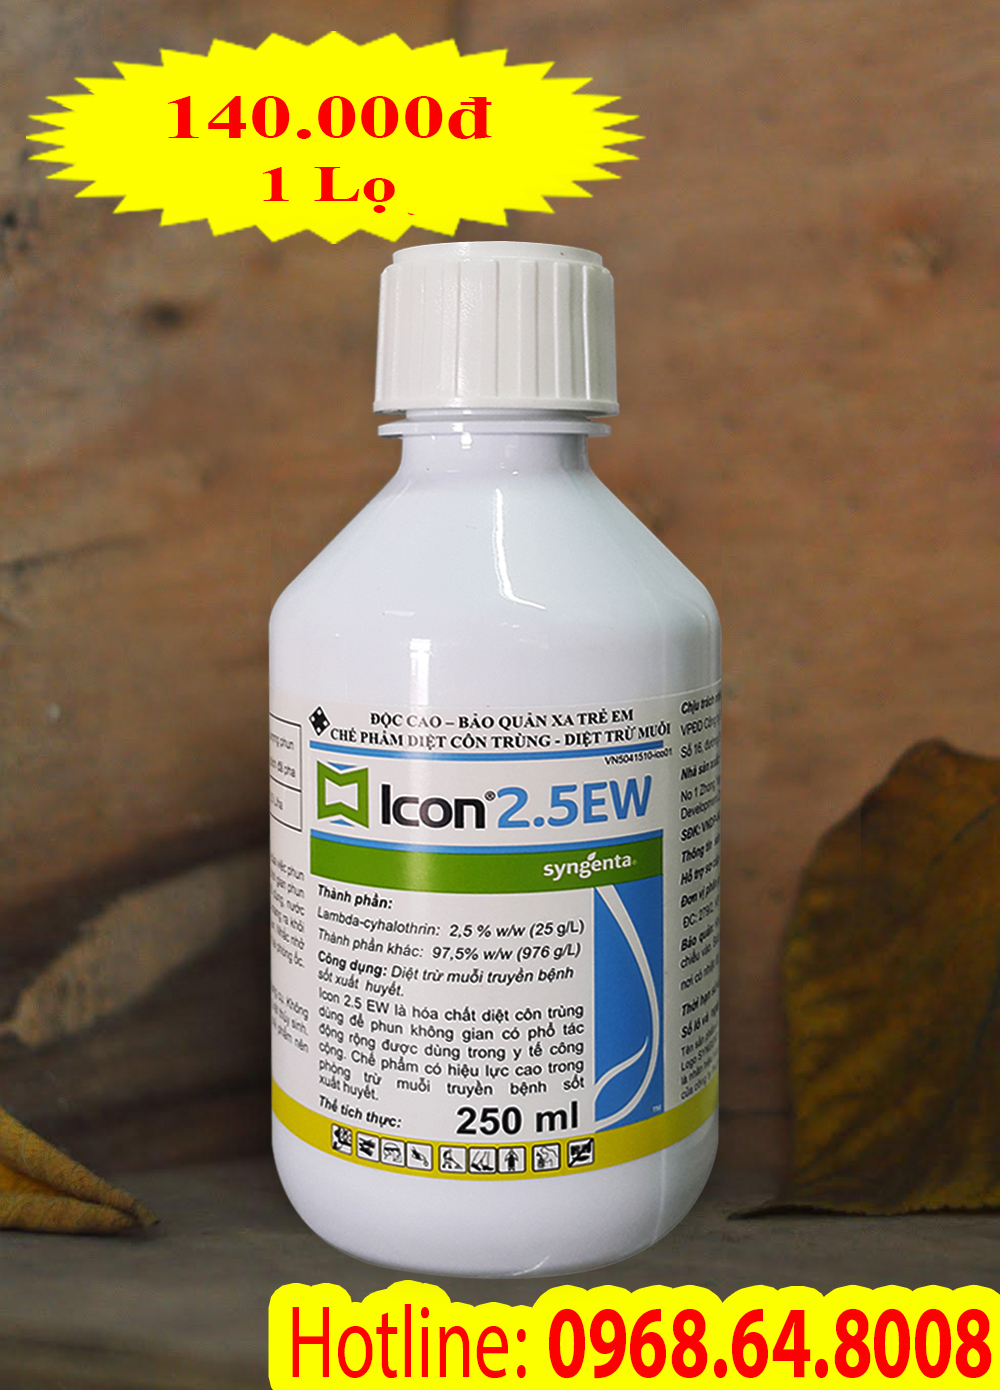 Icon 2.5EW (250 ml) - (Syngenta - THỤY SỸ) - Thuốc diệt côn trùng, muỗi, gián, ruồi, kiến, bọ chét...